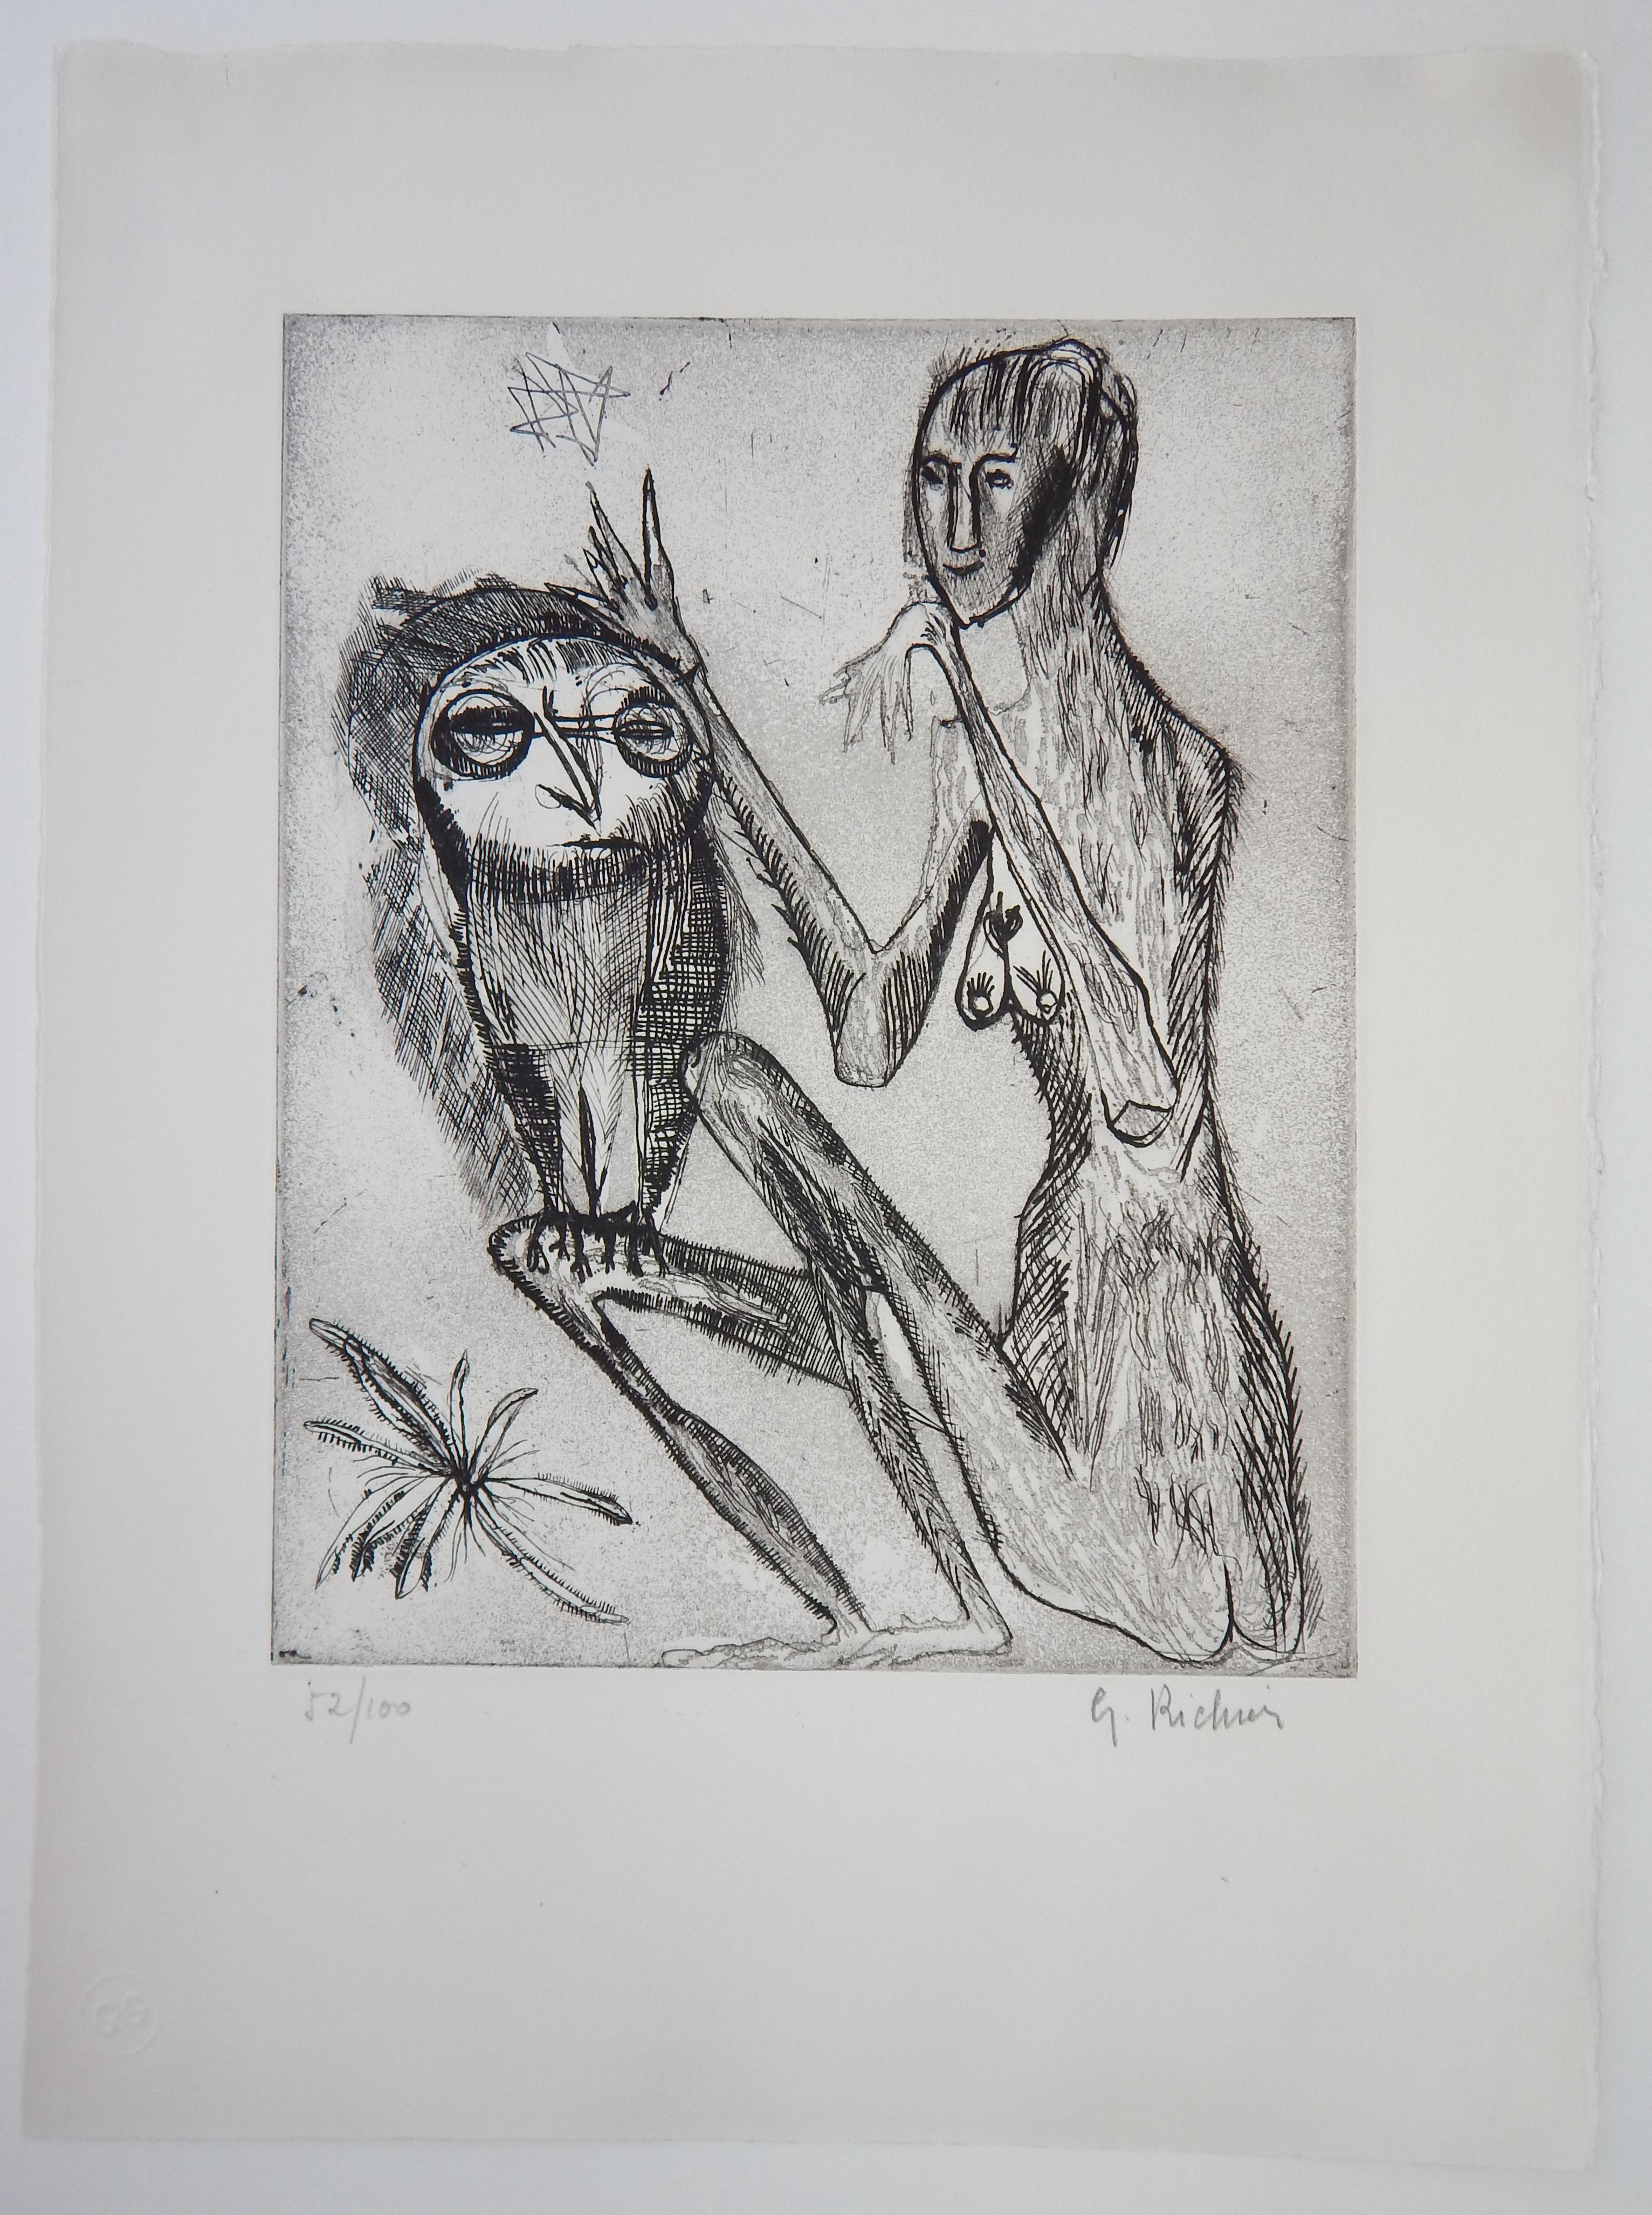 Germaine Richier (1902-1959) Radierung
Richier war ein französischer Künstler, der für seine Tier- und Insektenfiguren bekannt war
mit menschlichen Eigenschaften.
Radierung, Figur und Eule, um 1950.
Ungerahmt, in einem zweilagigen